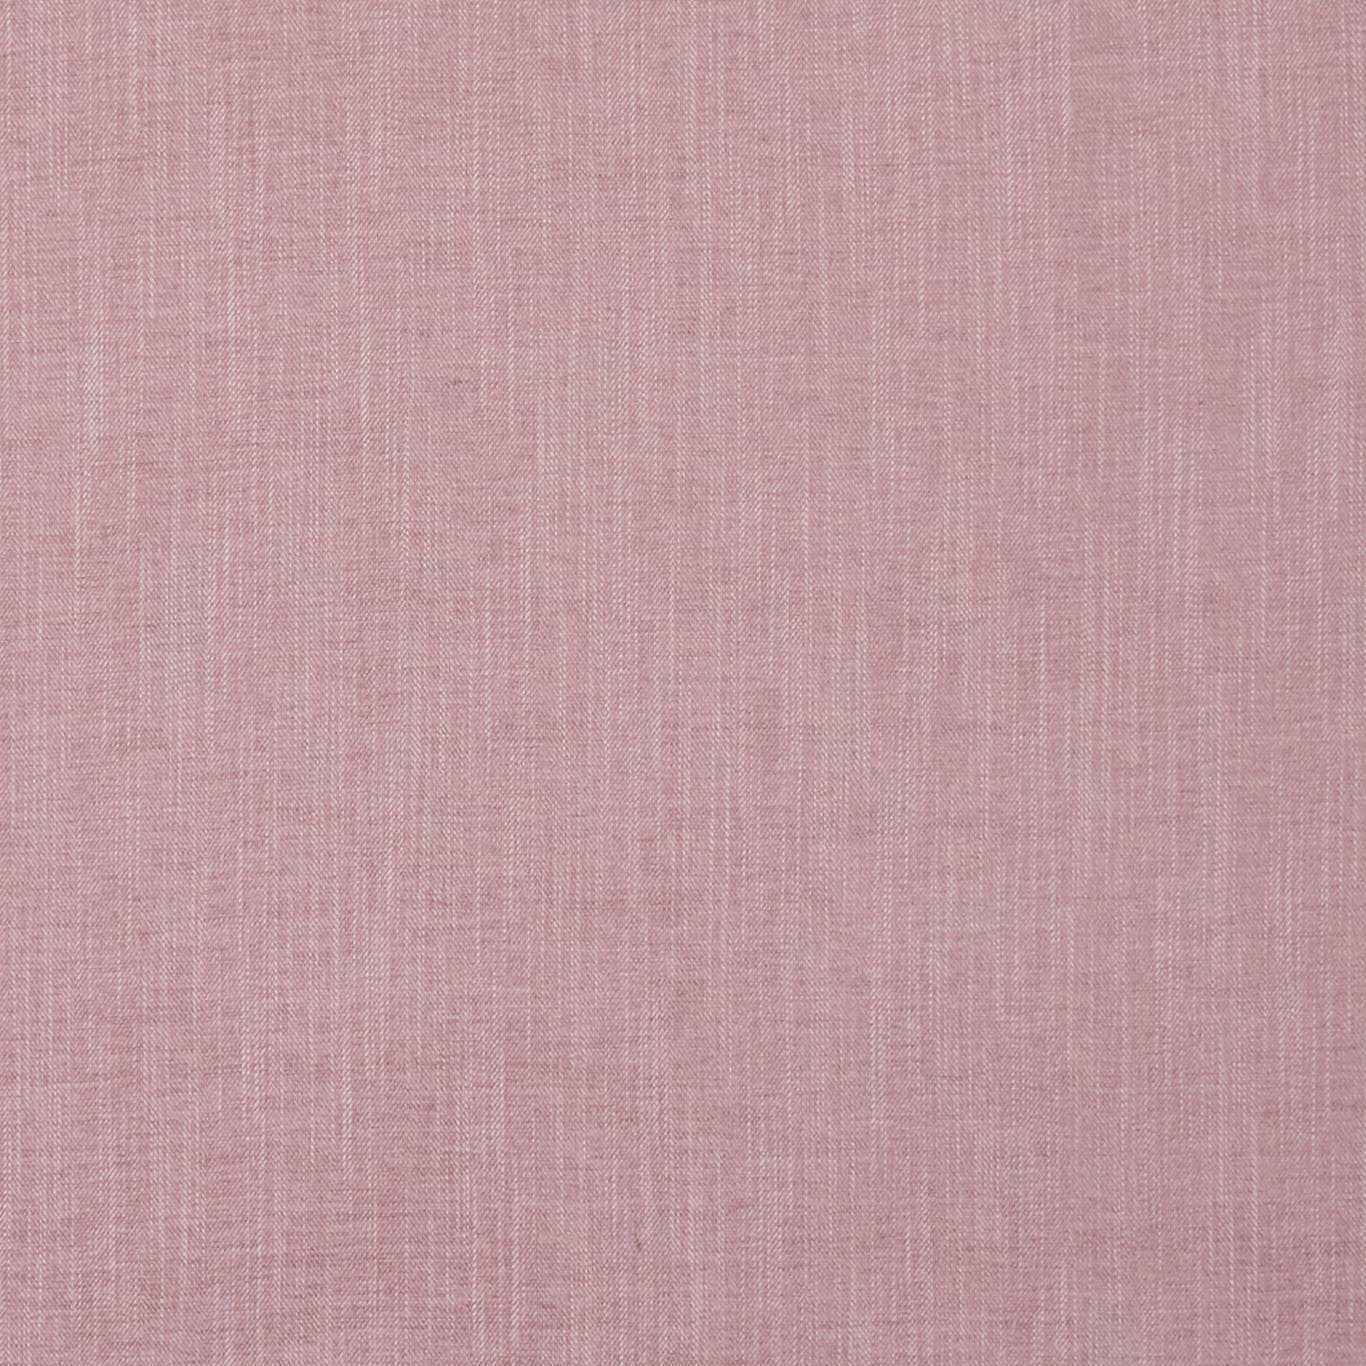 Moray Blush Fabric by CNC